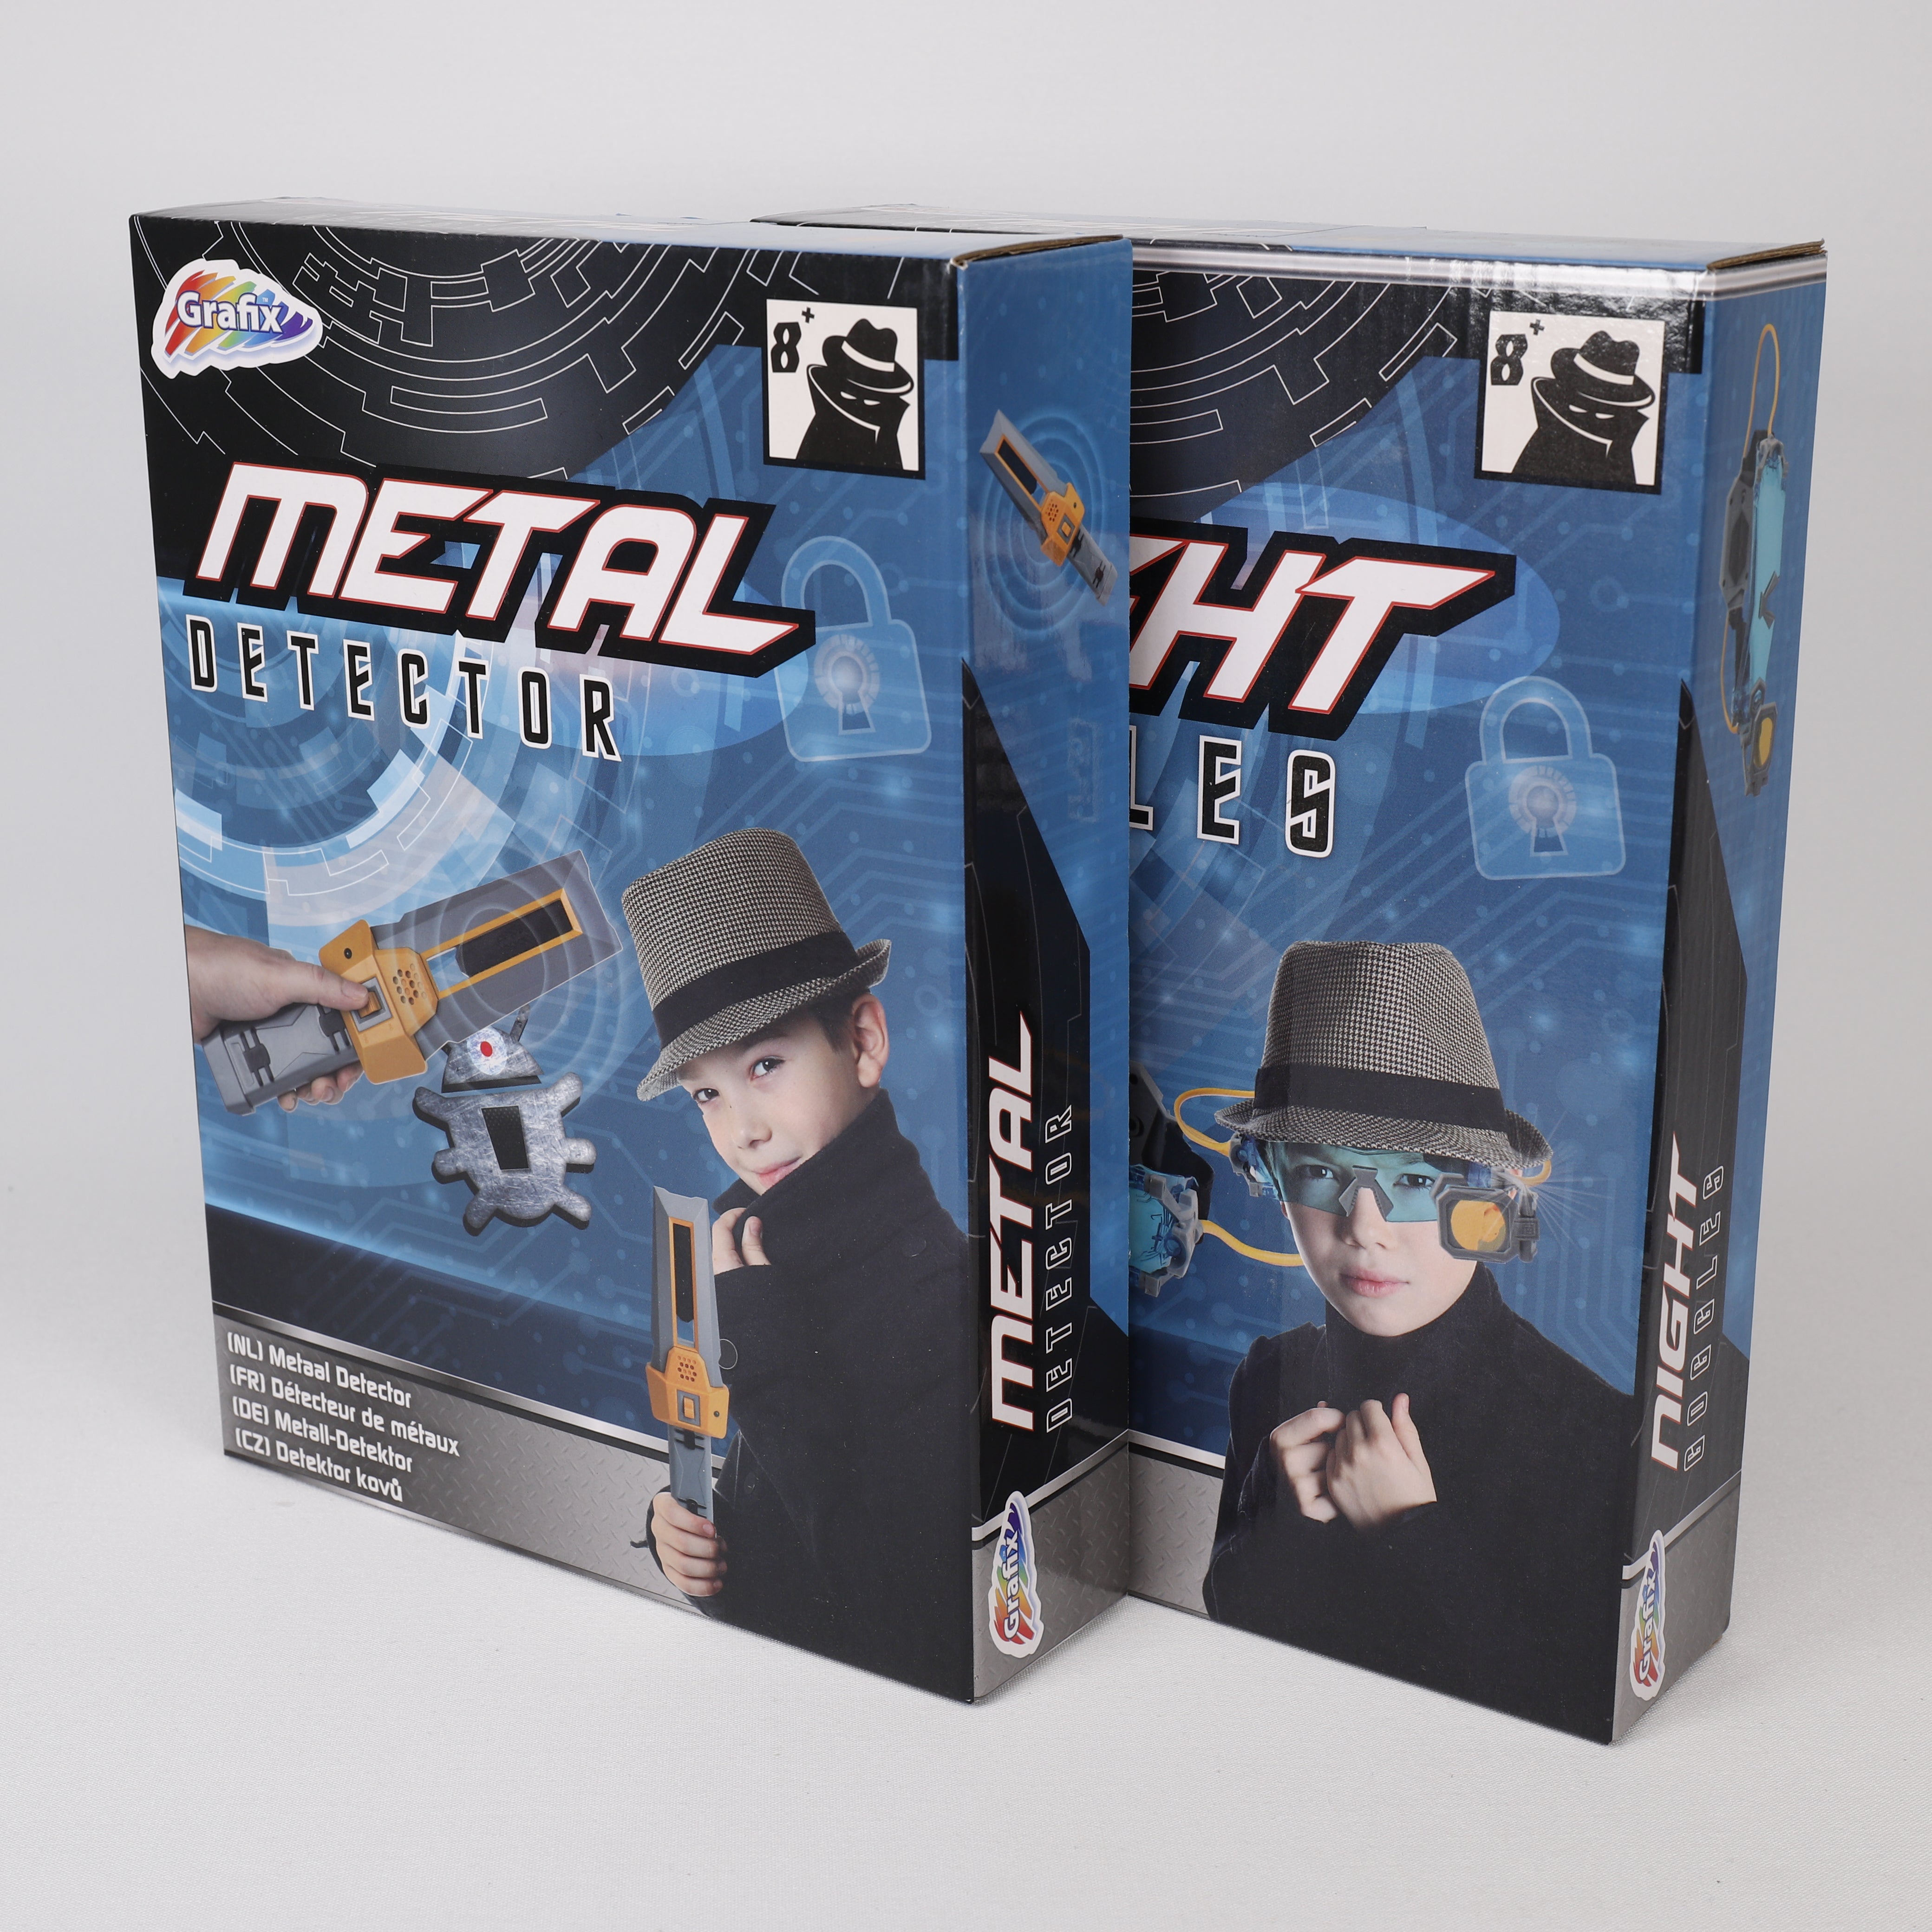 Metalldetektor, Spielzeug Detektiv, 27x20cm, Kinderspielzeug, ab 8 Jahren Grafix